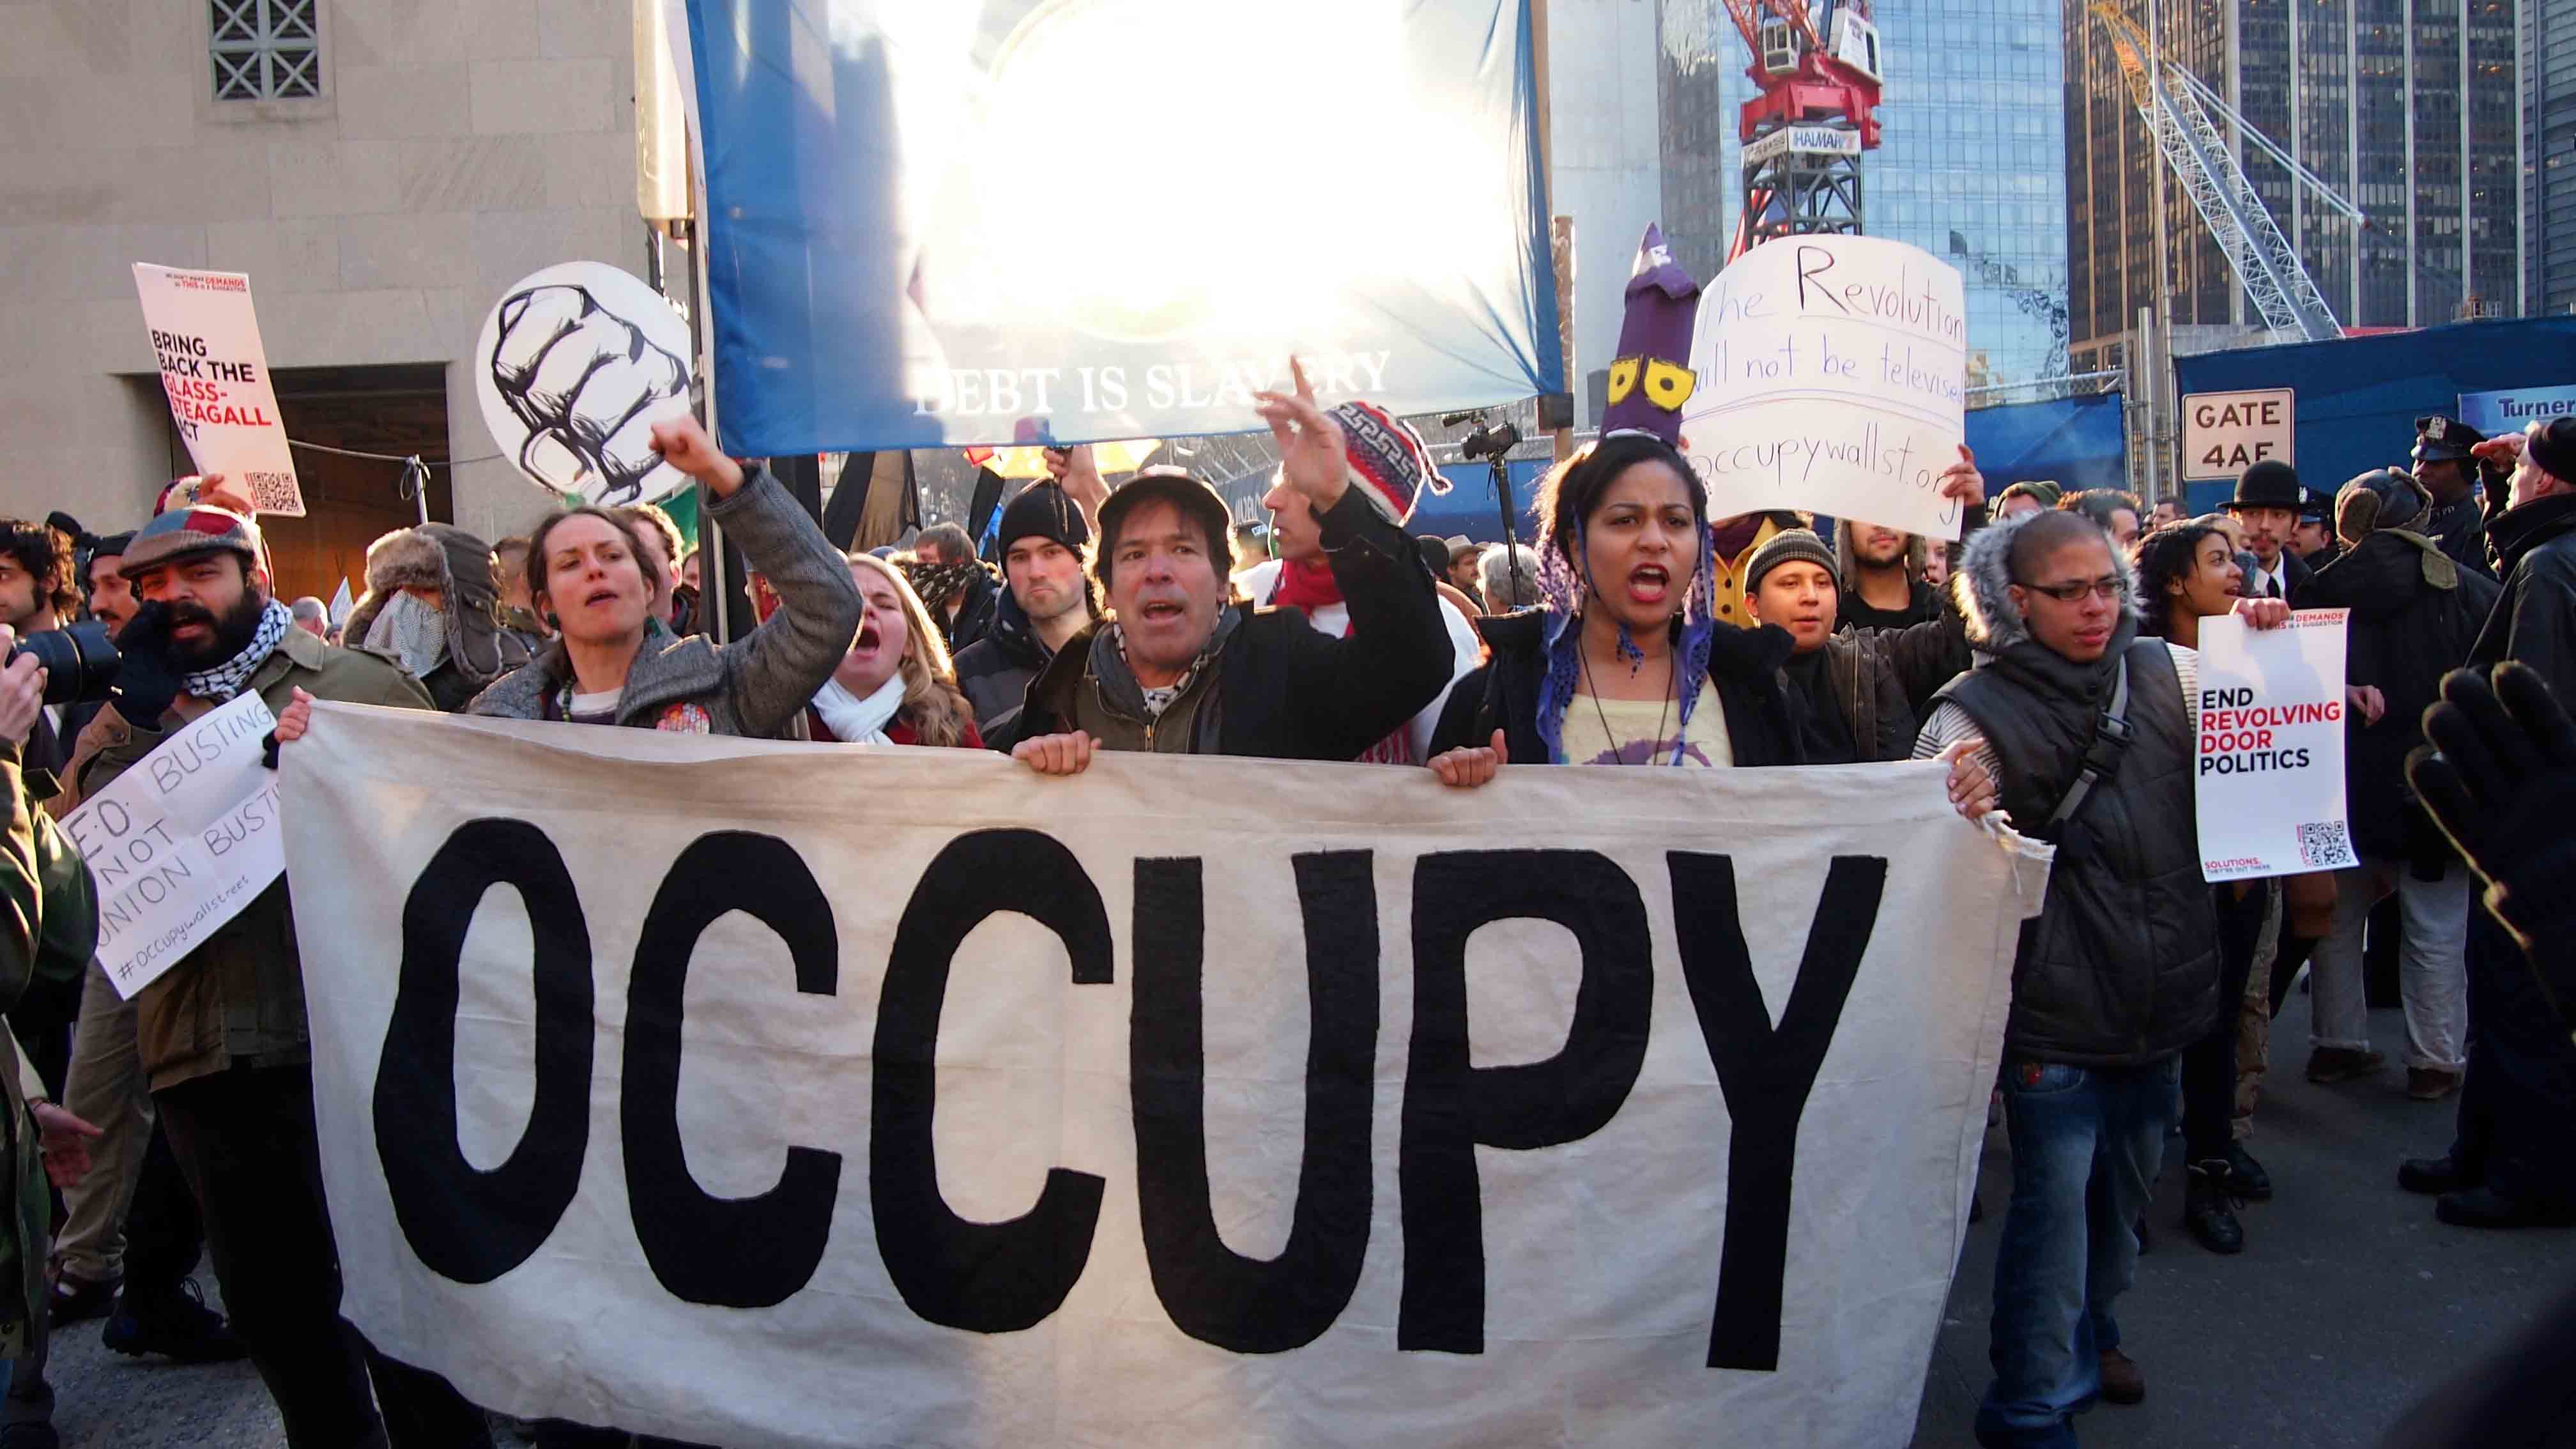 הפגנה בניו יורק ב12 לדצמבר 2011 (Editorial credit: Daryl L / Shutterstock.com)